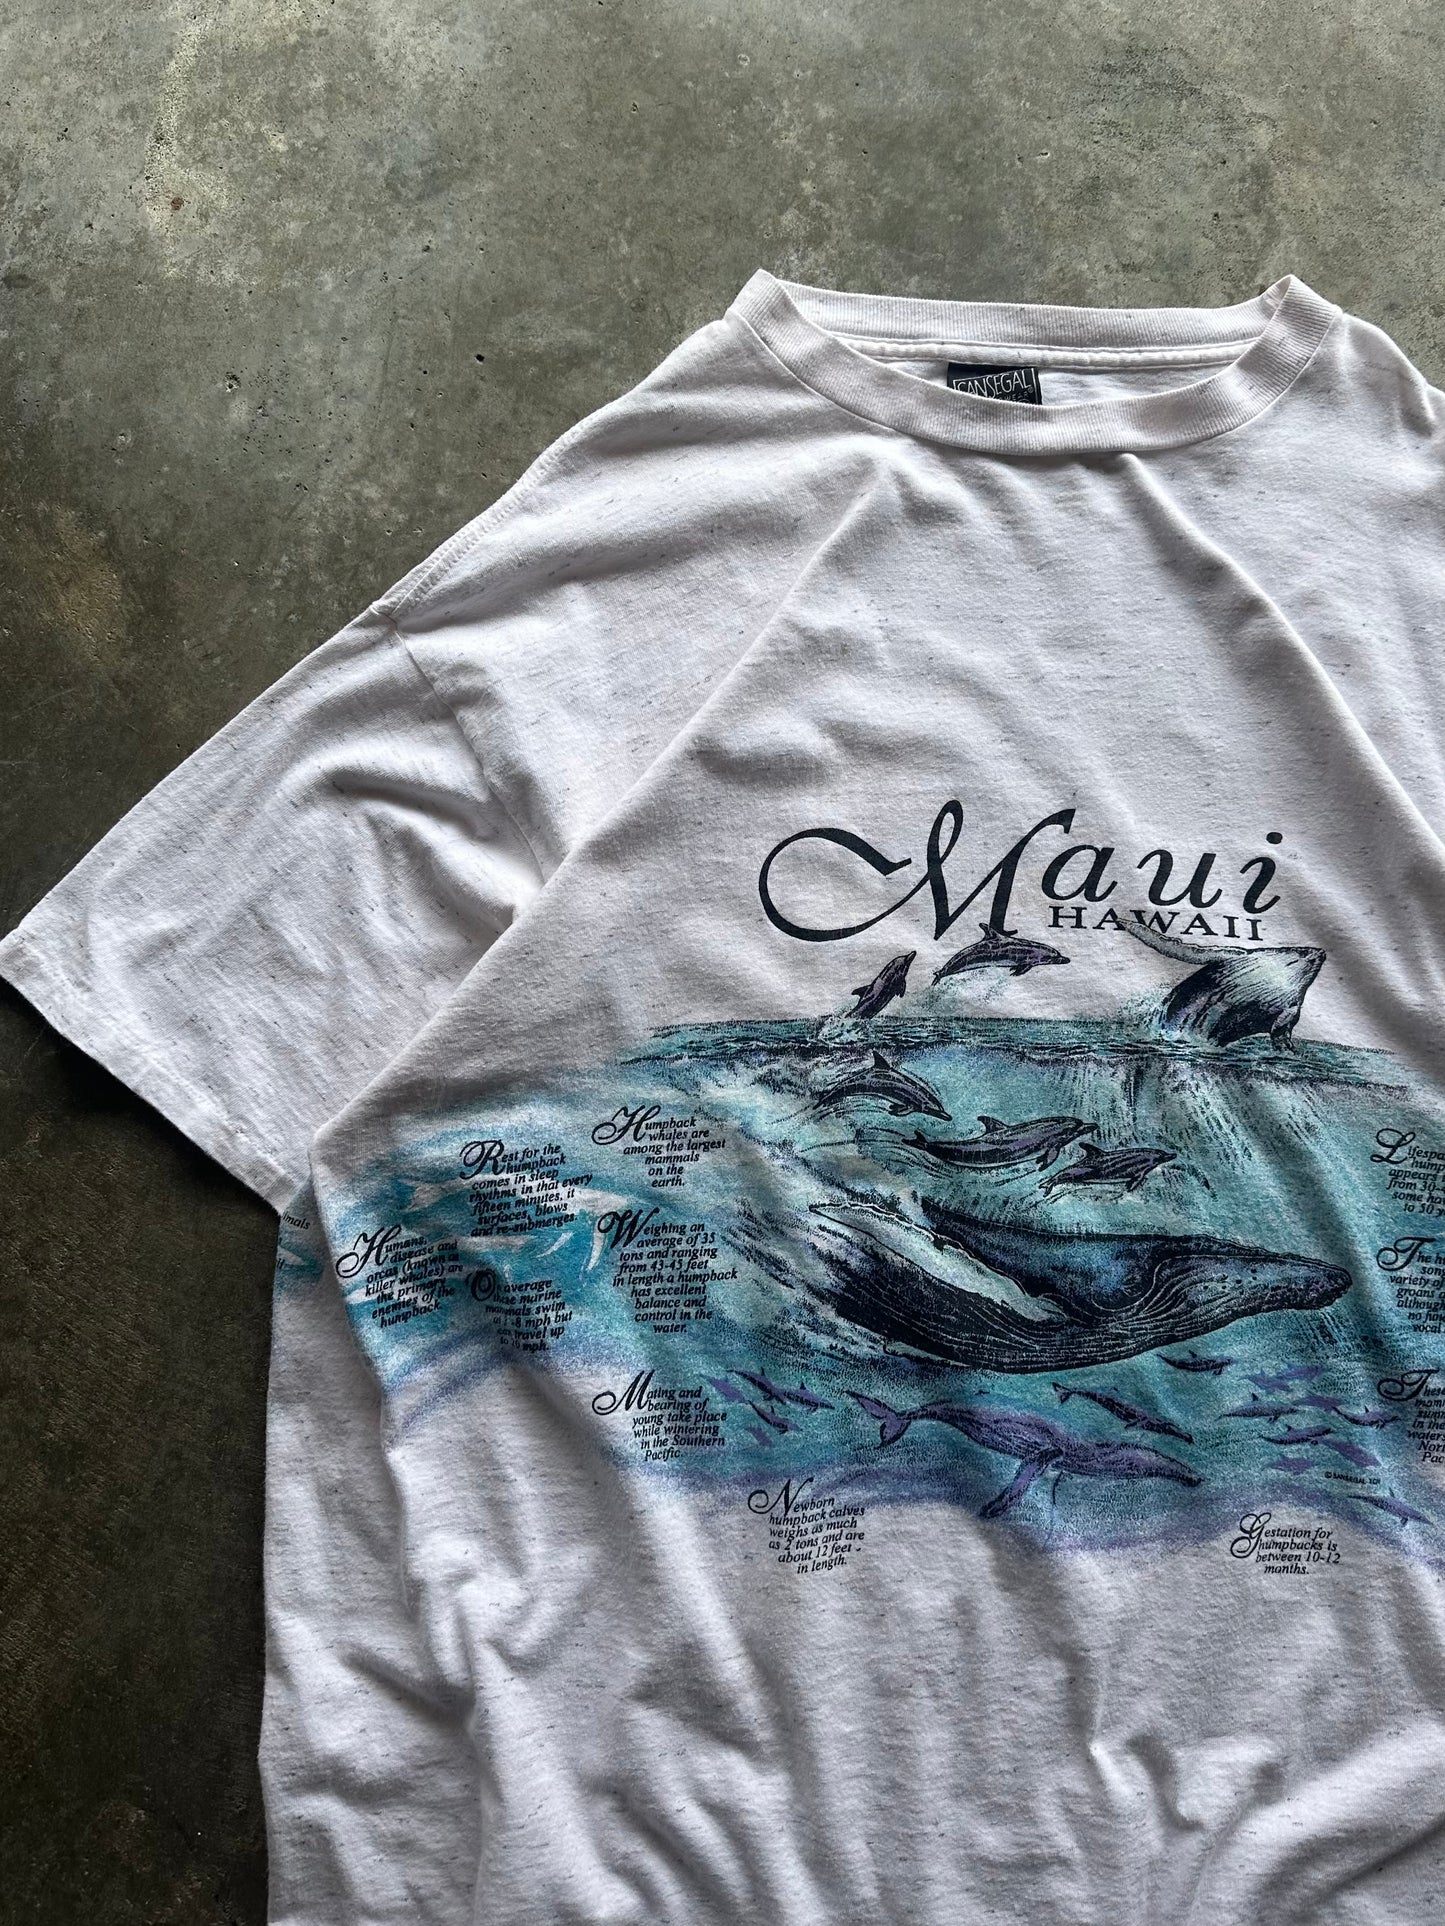 (XXL) Vintage Maui Hawaii Whale Tee